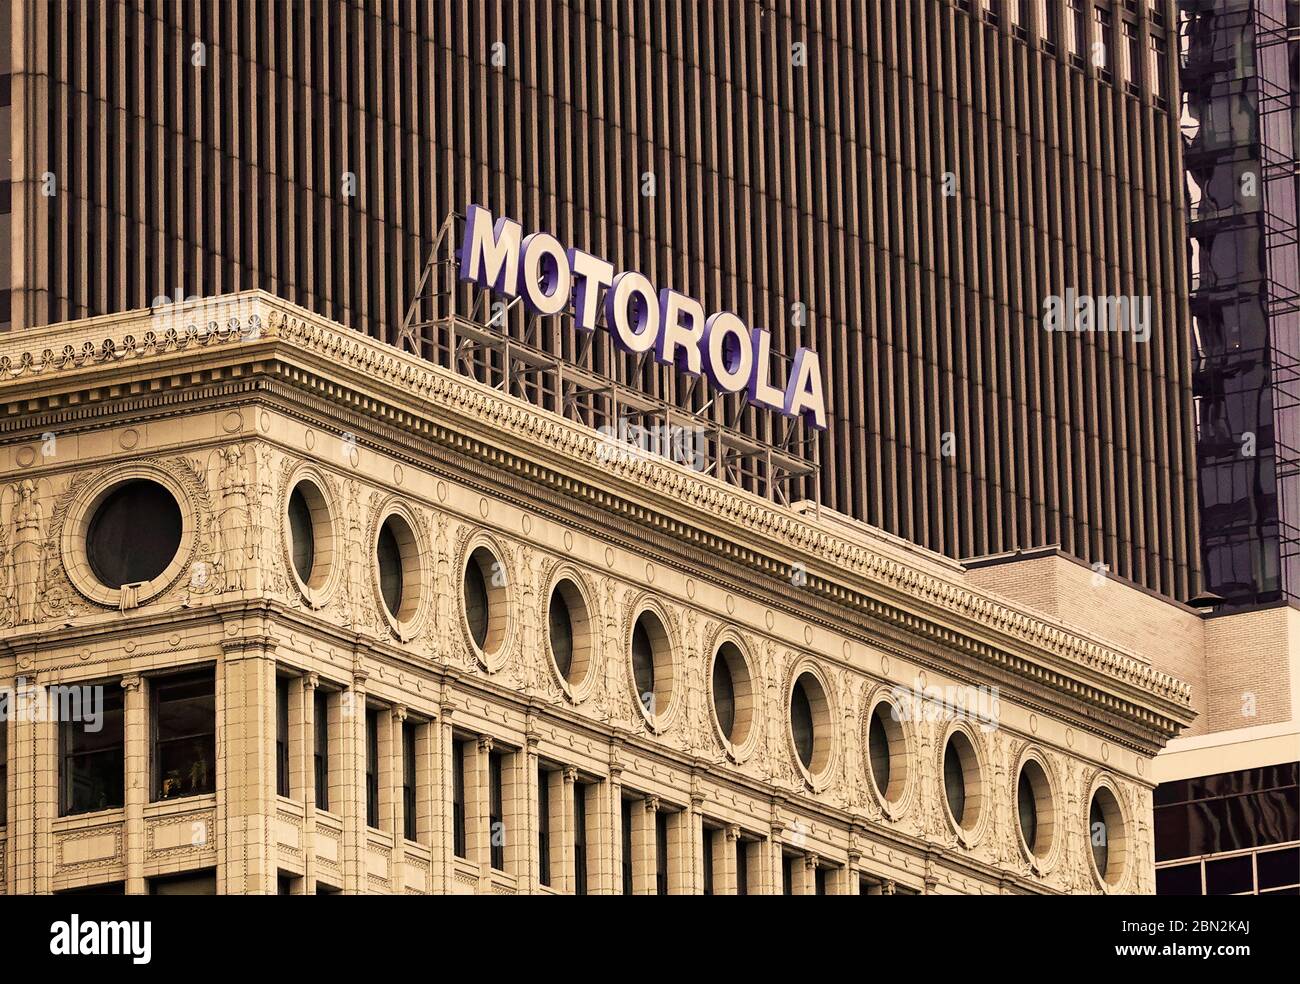 Motorola Zeichen auf der Bahnbörse Gebäude Chicago Illinois Stockfotografie  - Alamy